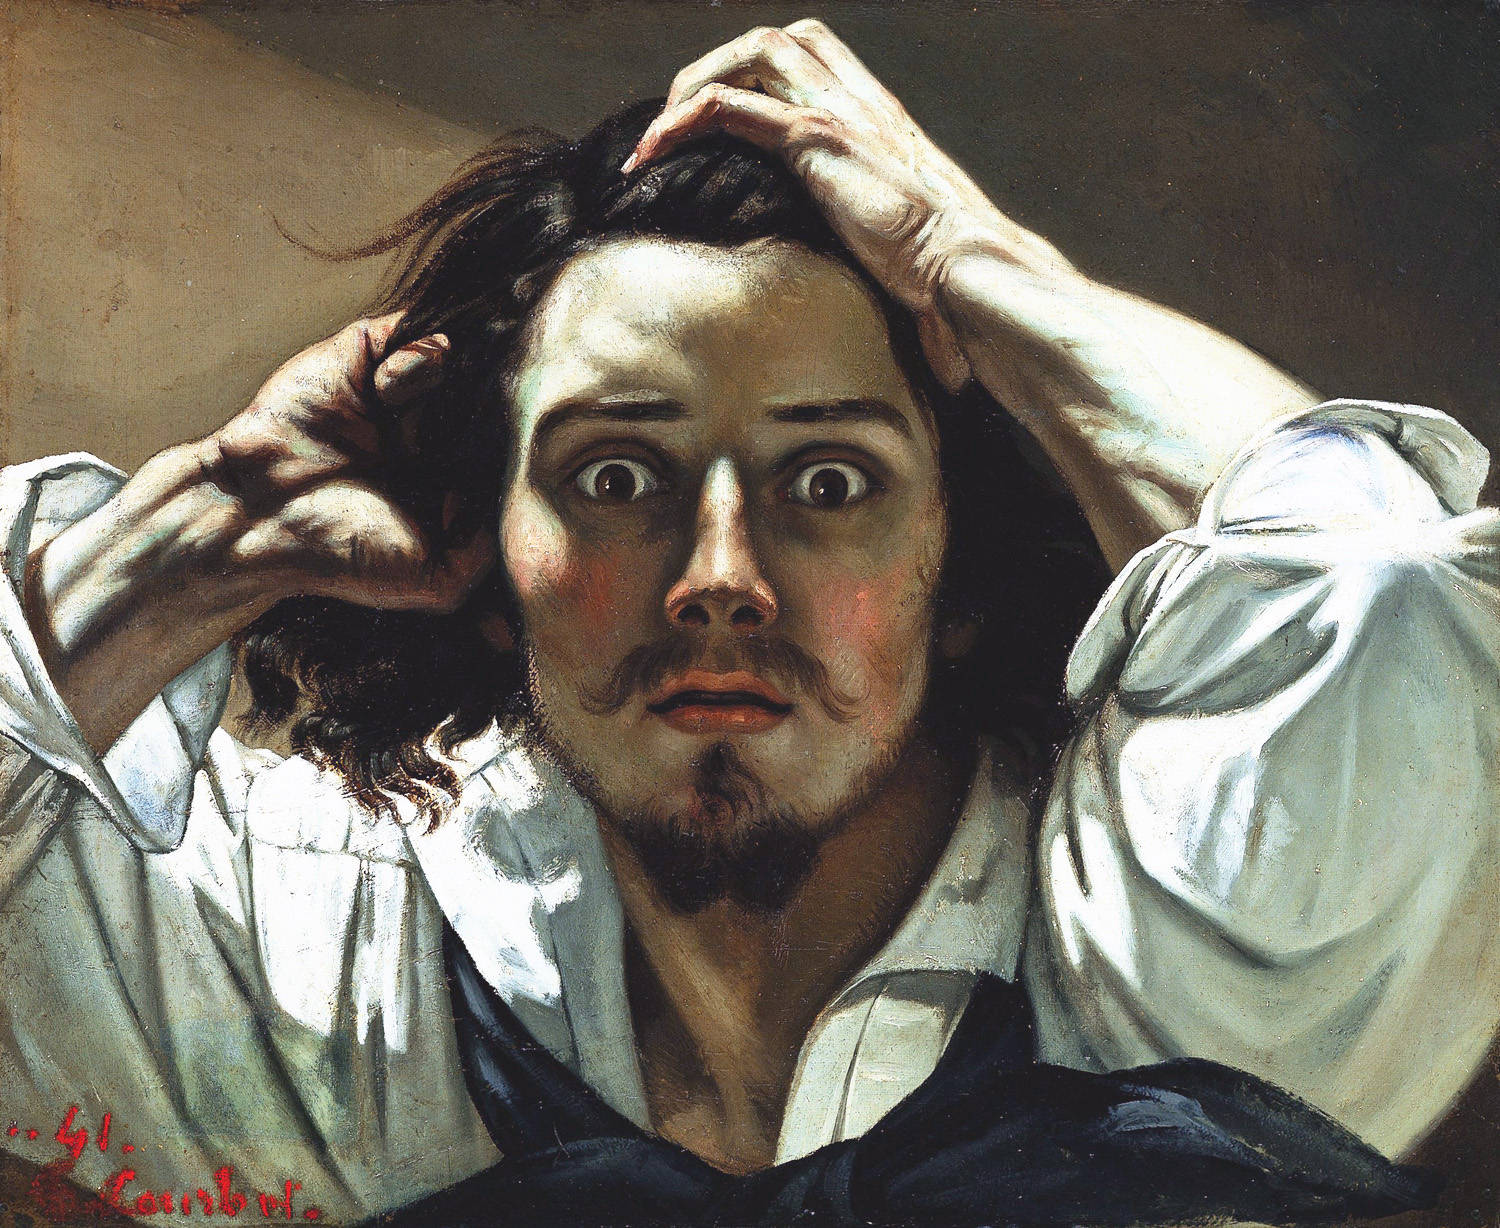 Gustave Courbet, Selbstporträt  (Der Verzweifelte (1843–1845)). Oil on canvas, 44 x 54 cm (17.3 x 21.2 in) - Privatsammlung. Das Gemälde “Le Désespéré” von Gustave Courbet aus dem Jahr 1843 zeigt einen jungen Mann, der in einem Raum sitzt mit einem Lichteinfall von seiner rechten Seite (vom Betrachter die Linke). Sein Gesichtsausdruck ist von Verzweiflung geprägt. Die Schatten im Gesicht mit roten Wangen stehen im starken Kontraste  mit dem Weiß des Hembes, das er trägt. Zu betonen ist sein emotionaler Ausdruck durch den die Gesichtsmuskulatur hervortritt. Der Mann hält seinen Kopf mit beiden Händen und schaut mit wahnhaft aufgerissenen Augen die Betrachtenden an.